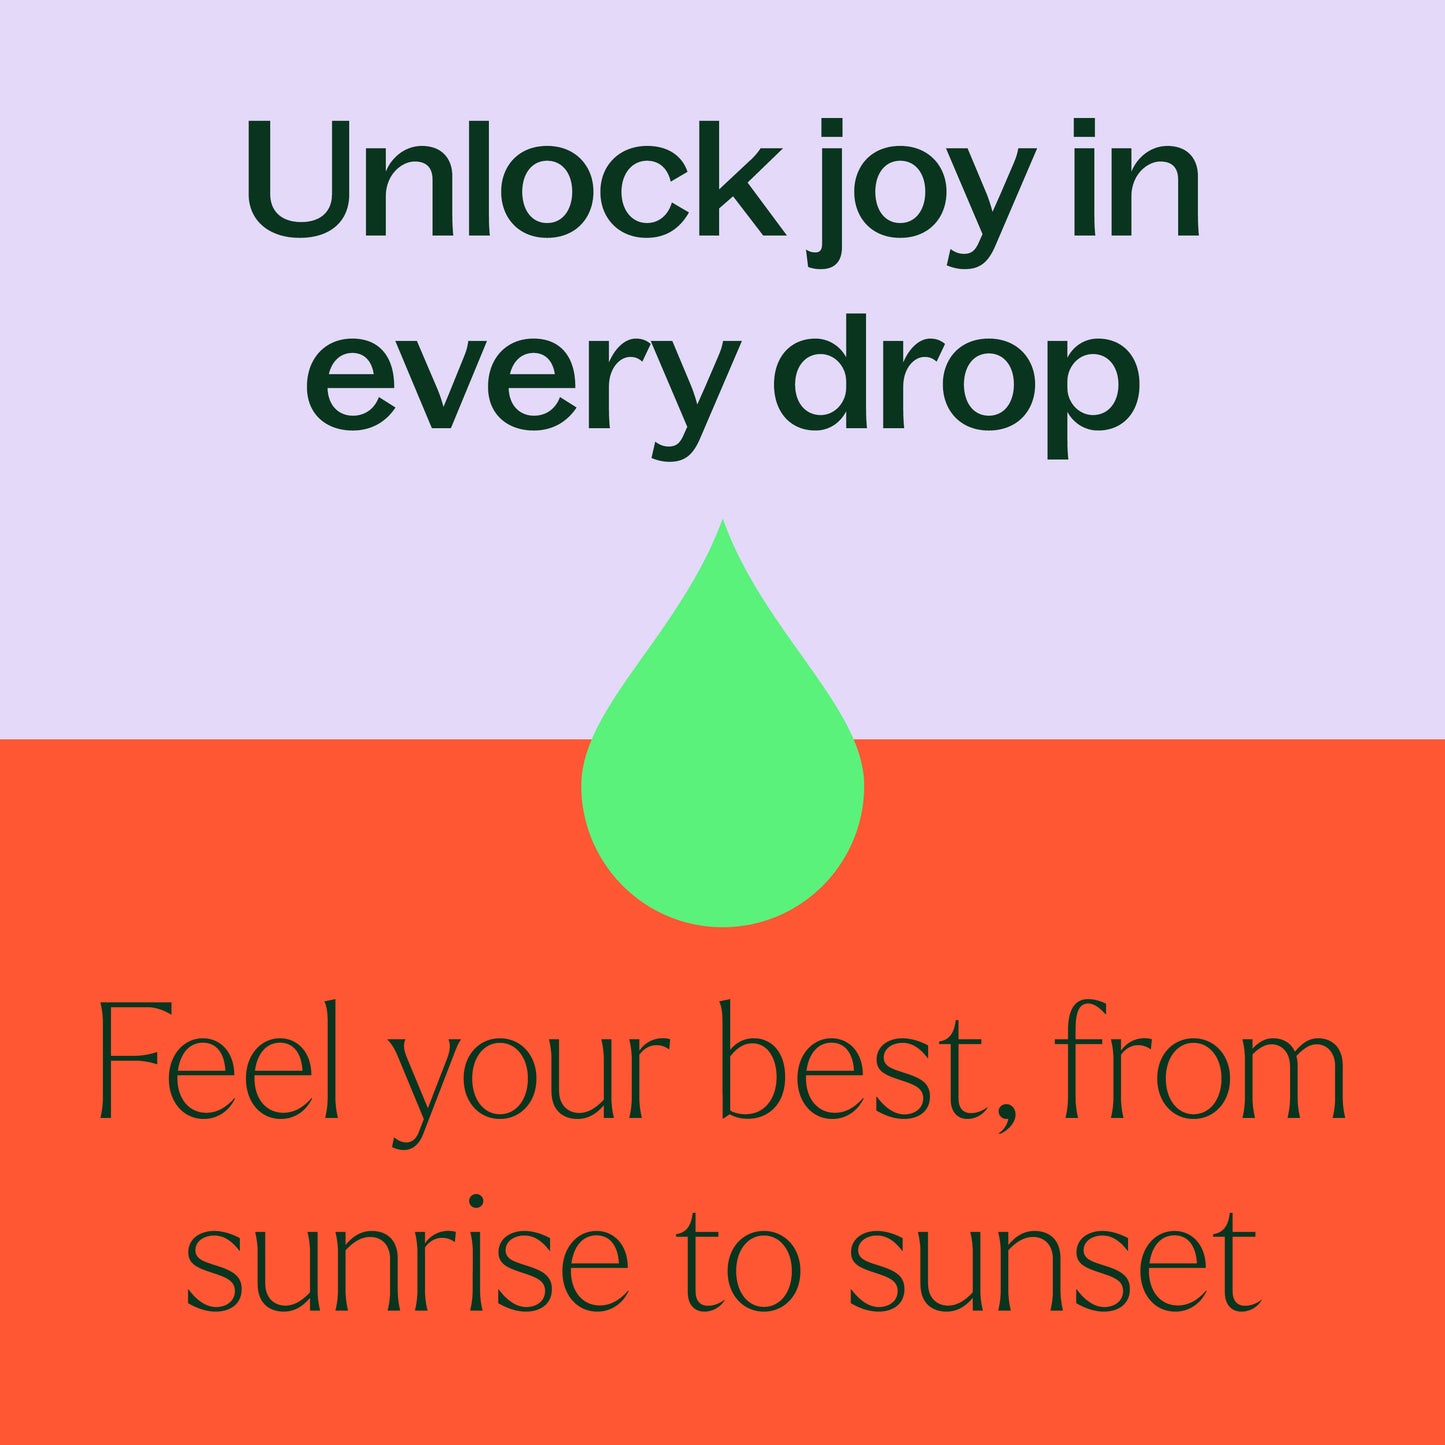 Unlock joy in every drop